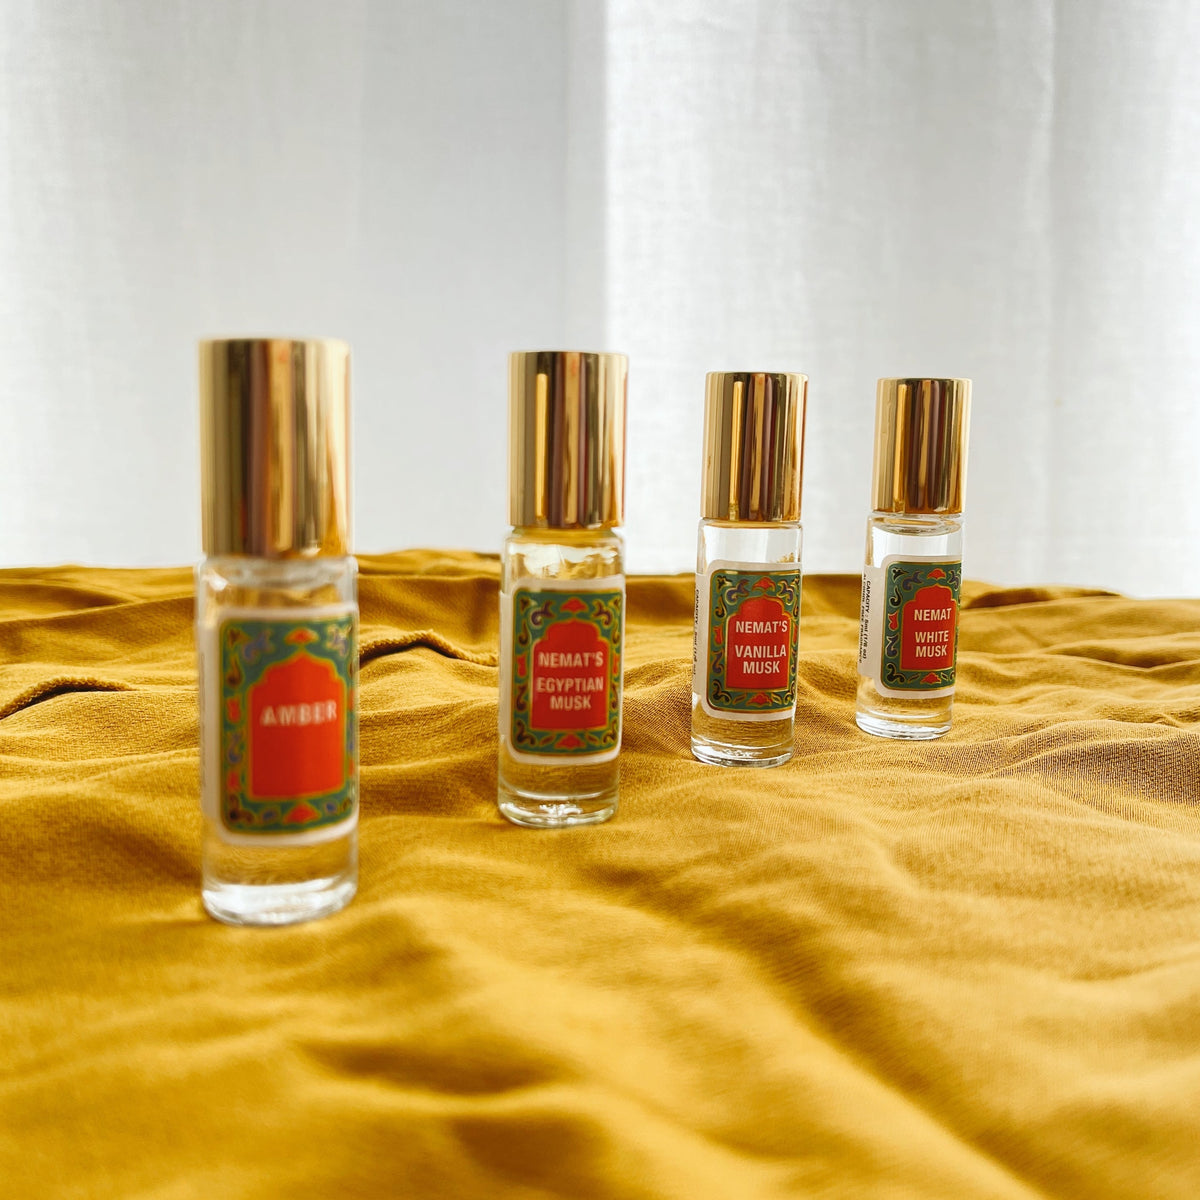  Nemat Egyptian Musk Perfume Oil, 10 ML : Personal